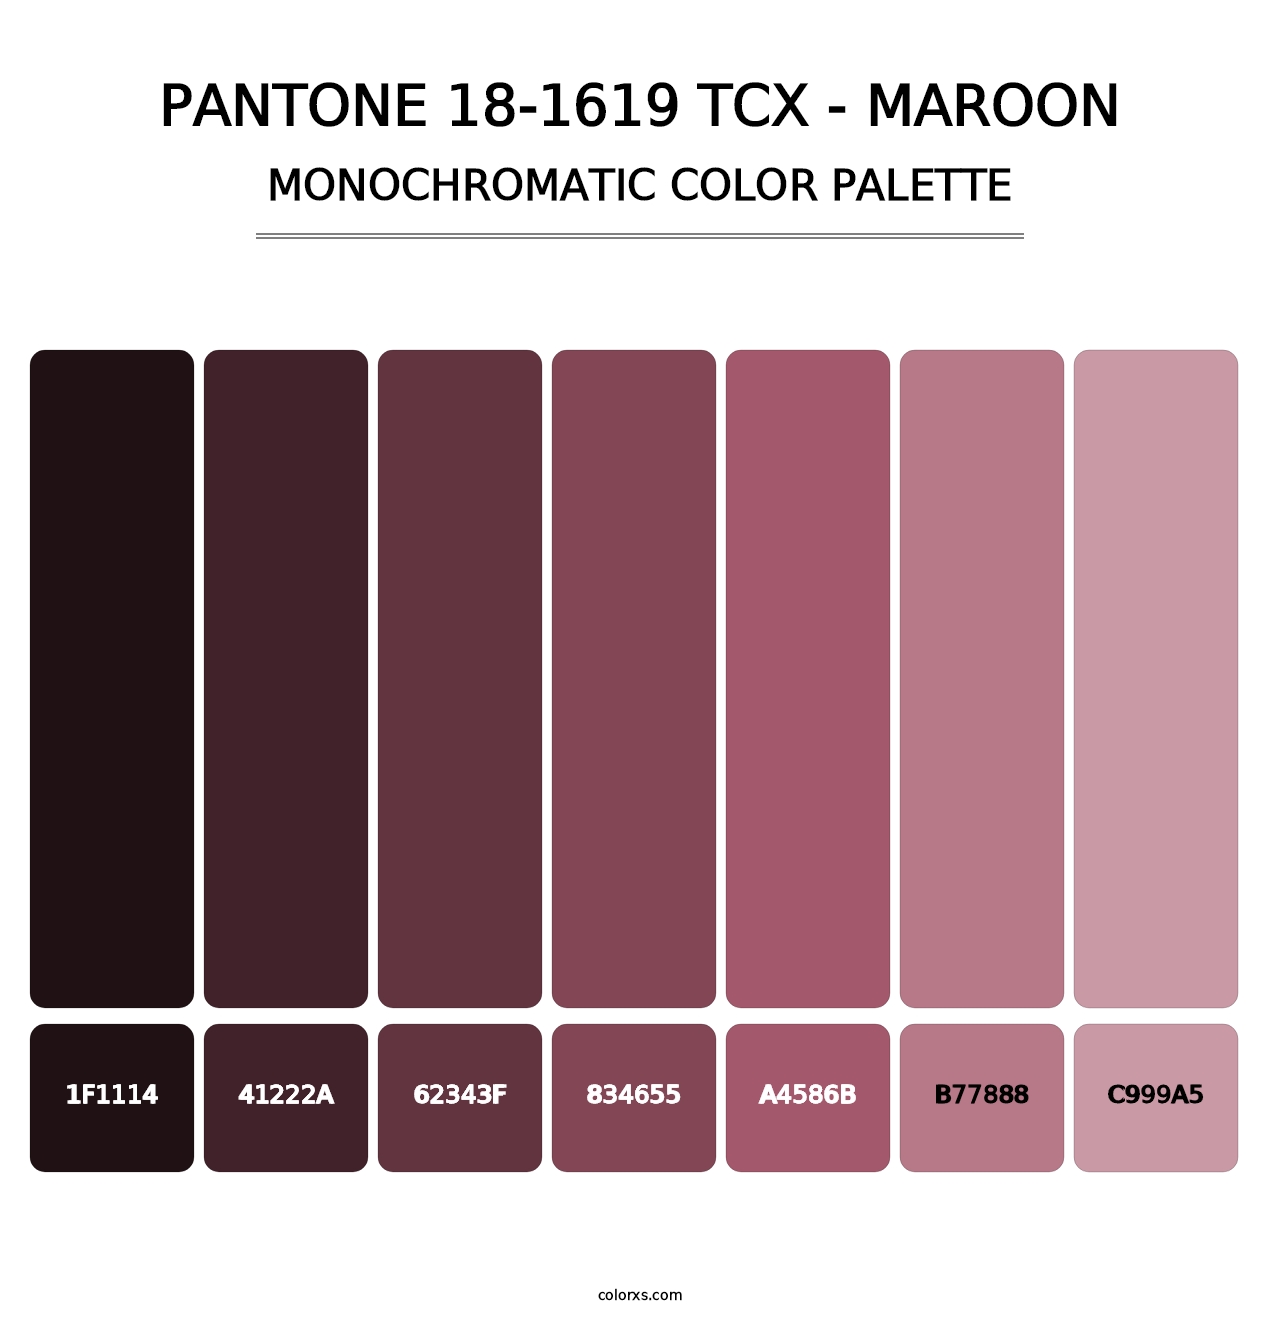 PANTONE 18-1619 TCX - Maroon - Monochromatic Color Palette